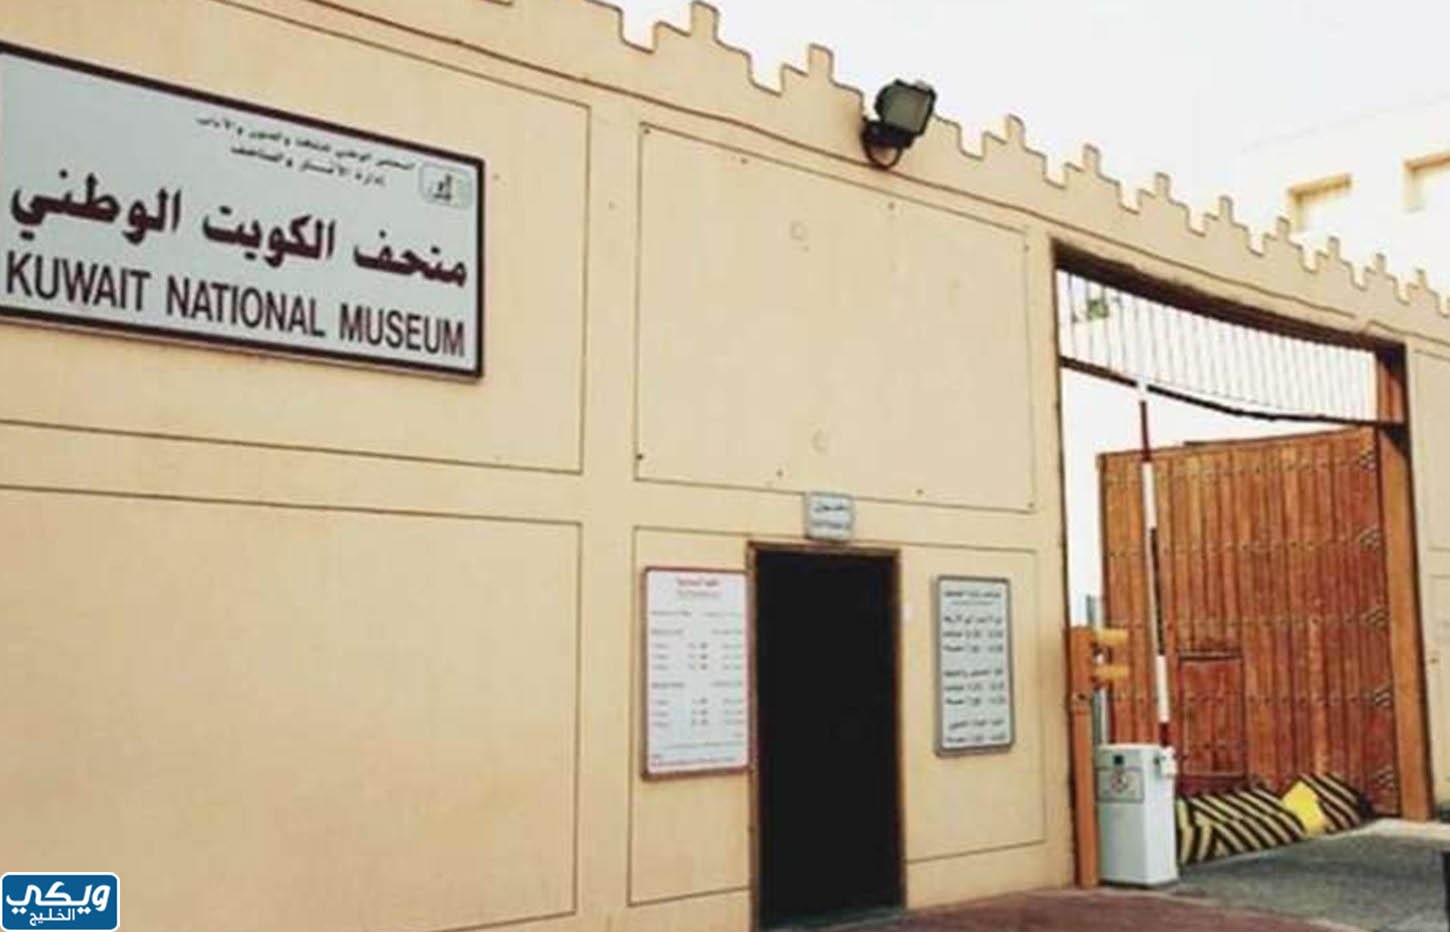 صور متحف الكويت الوطني من الخارج